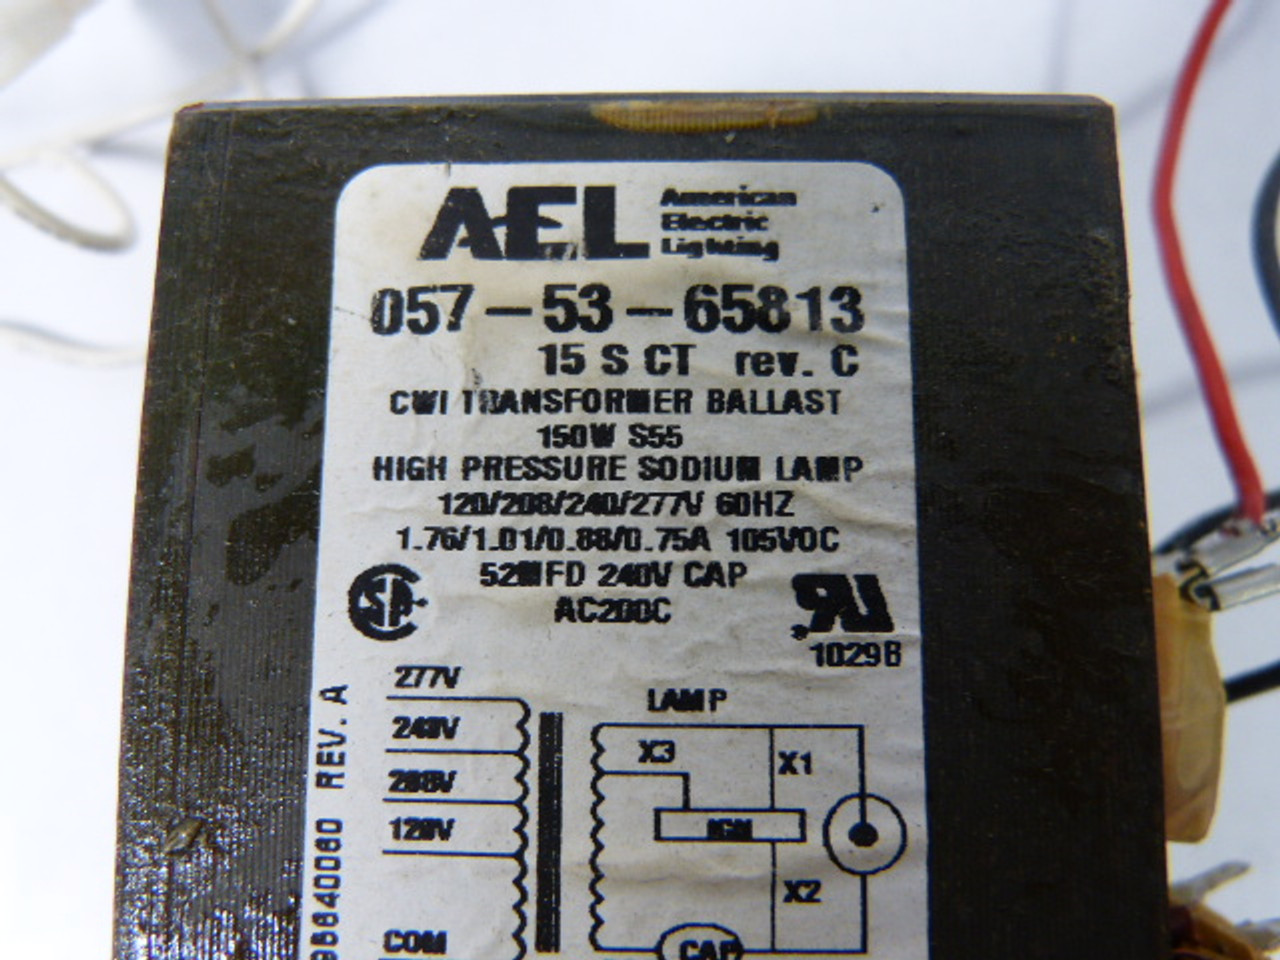 AEL 057-53-65813 Transformer Ballast USED